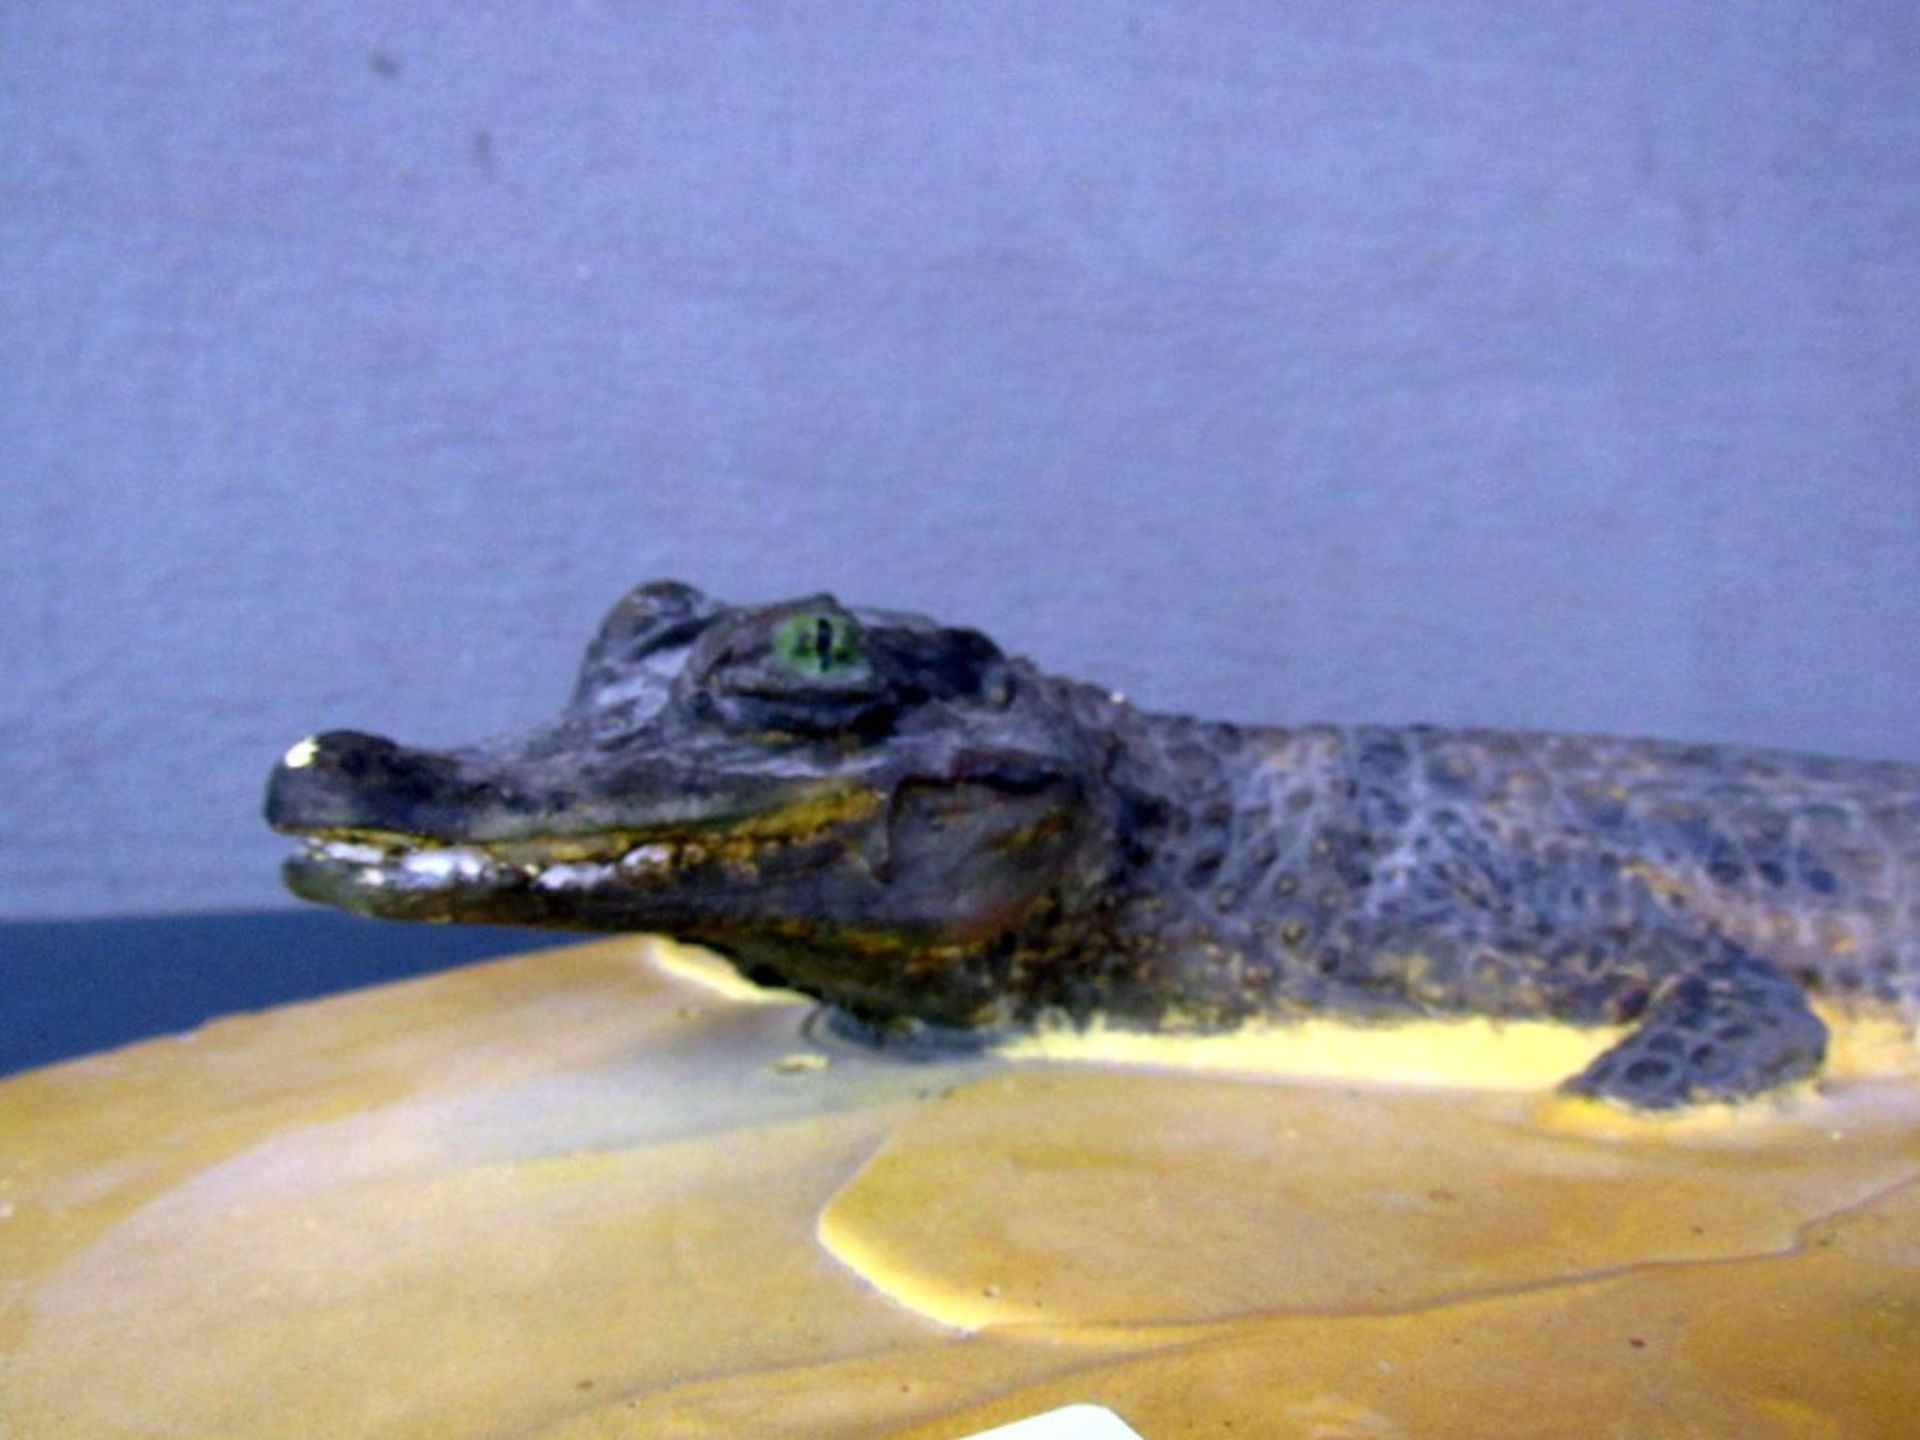 Wandapplikation Krokodil Keramik - Bild 5 aus 7